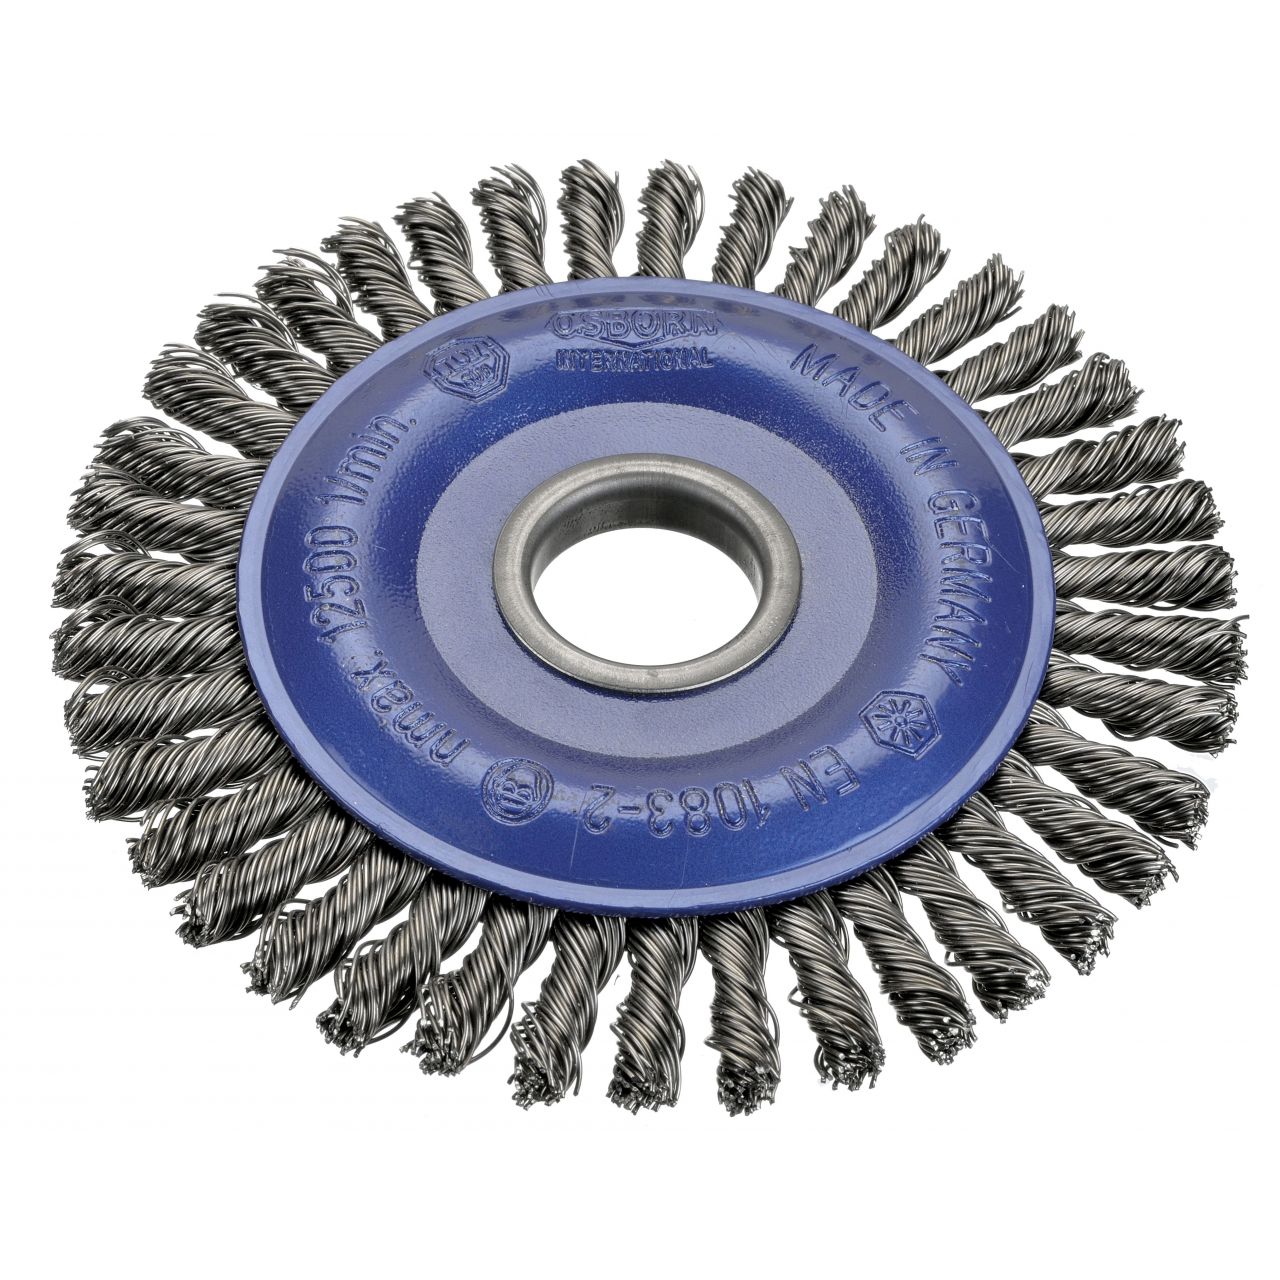 Cepillo circular acero de alambre trenzado especial soldadura con agujero de 22,2 mm y filamento de Ø 0.35 mm (115x6 )